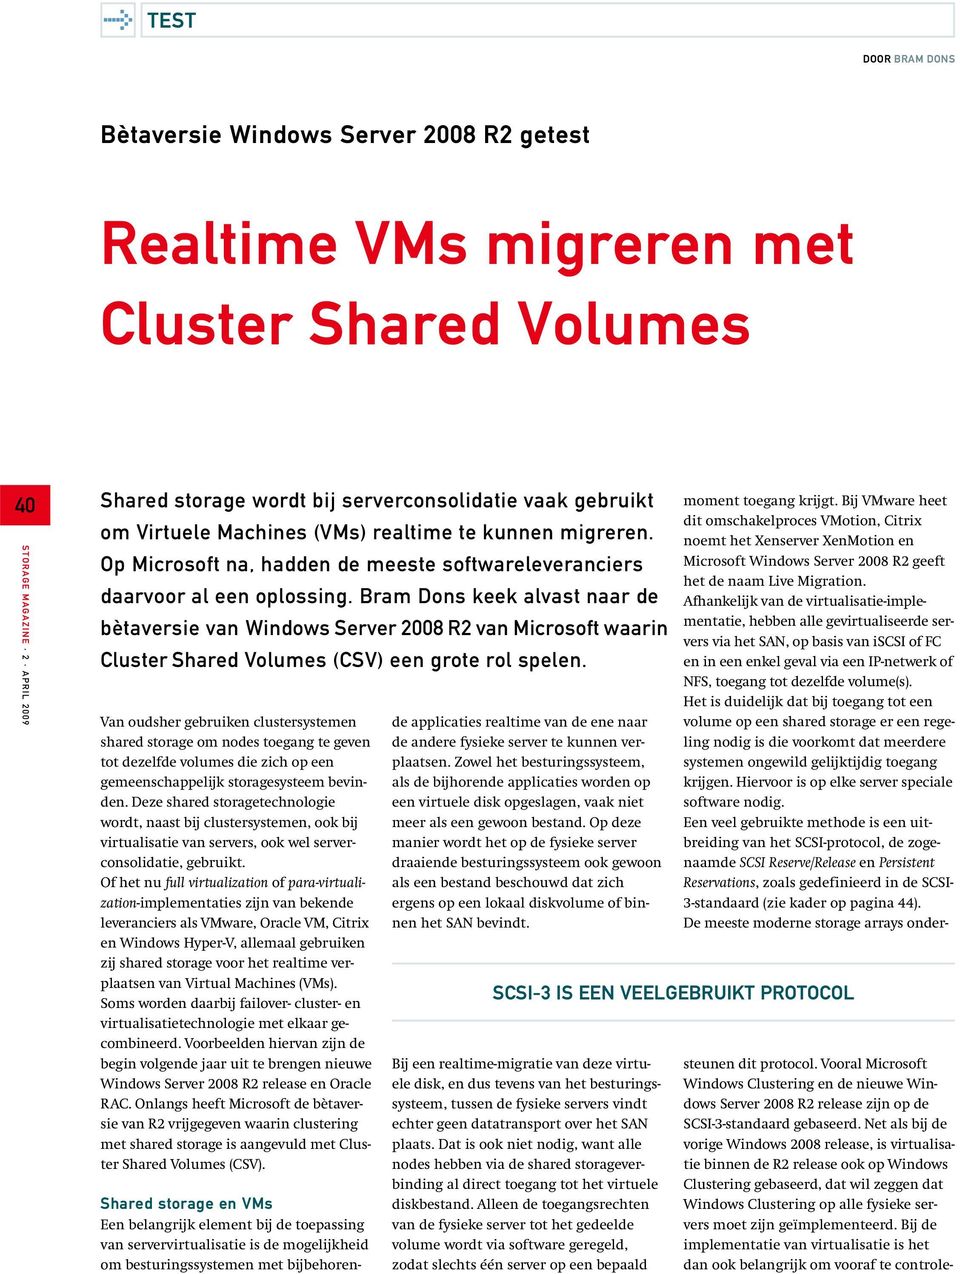 Bram Dons keek alvast naar de bètaversie van Server 2008 R2 van Microsoft waarin Cluster Shared Volumes (CSV) een grote rol spelen.